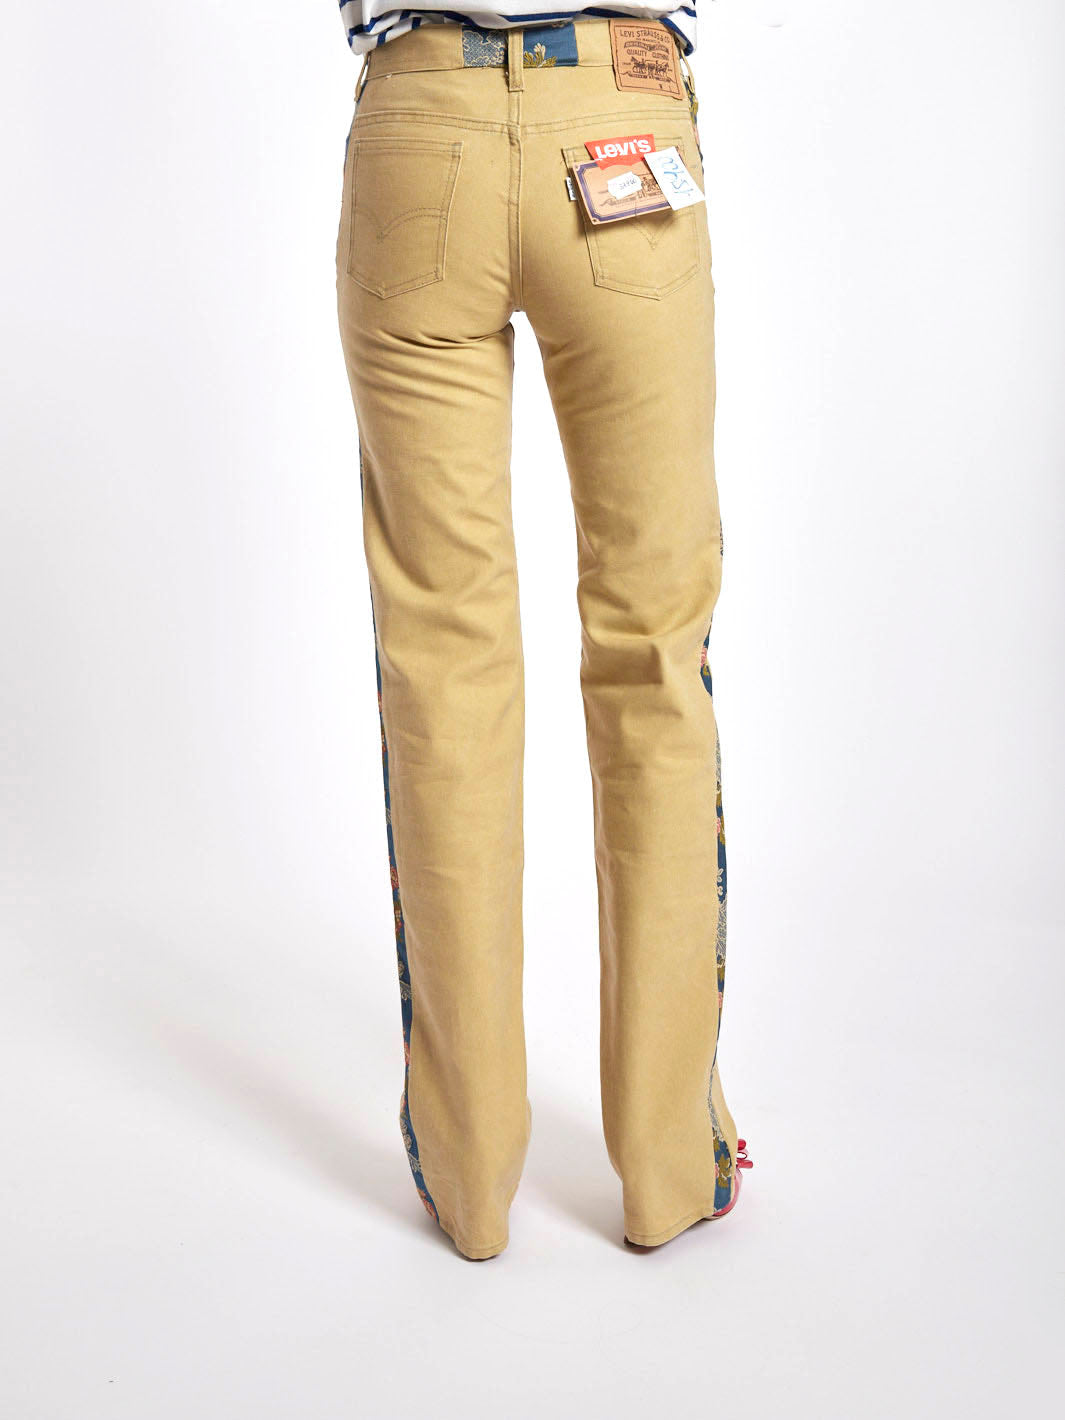 Jeans Levi's anni '80, personalizzati da Cavalli e Nastri